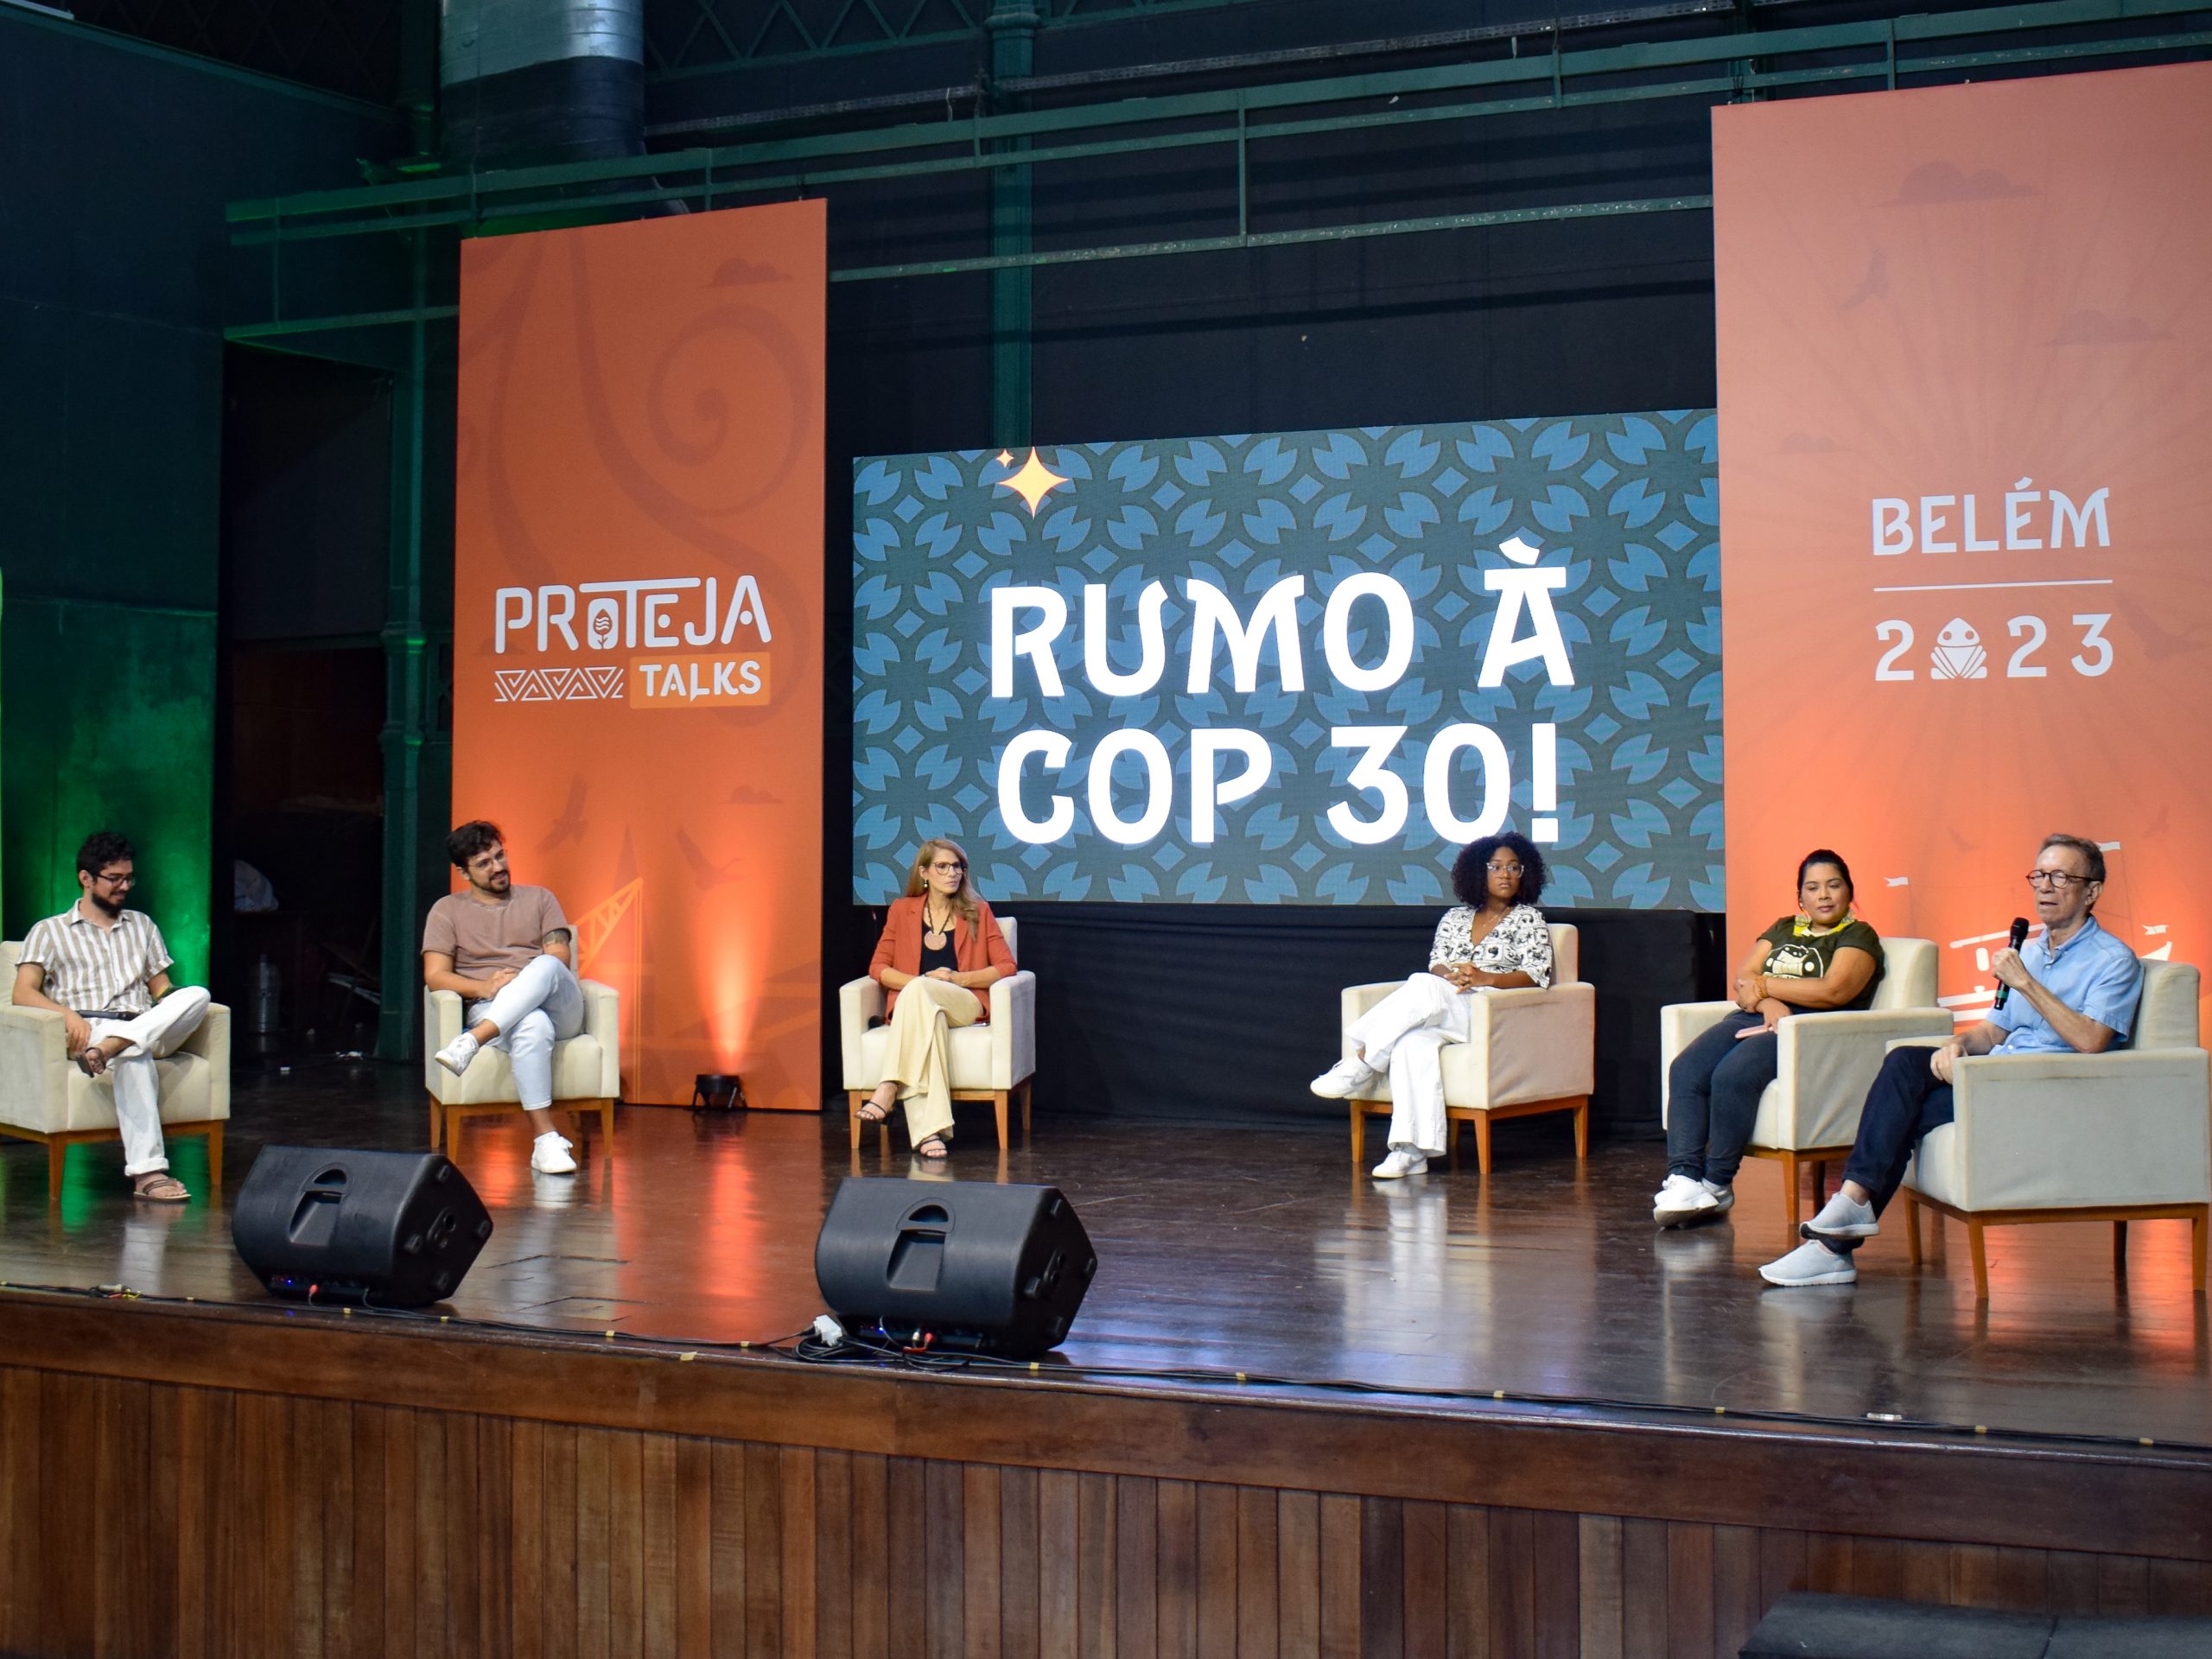 DSC 0470 scaled - Assista na íntegra a 5° edição do Proteja Talks - Rumo à COP 30